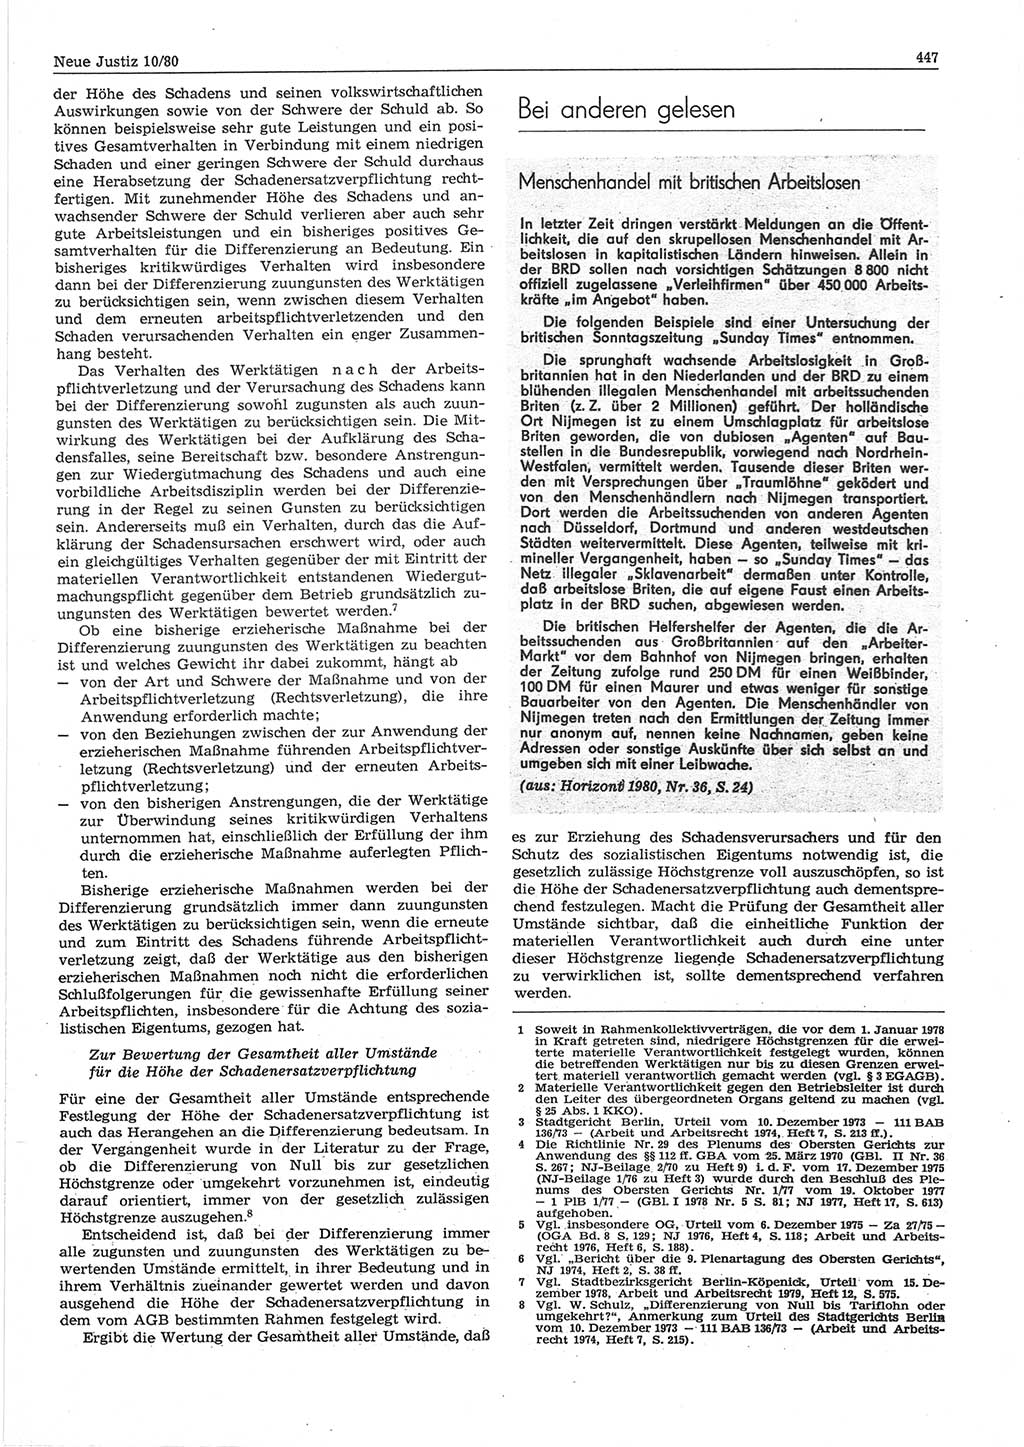 Neue Justiz (NJ), Zeitschrift für sozialistisches Recht und Gesetzlichkeit [Deutsche Demokratische Republik (DDR)], 34. Jahrgang 1980, Seite 447 (NJ DDR 1980, S. 447)